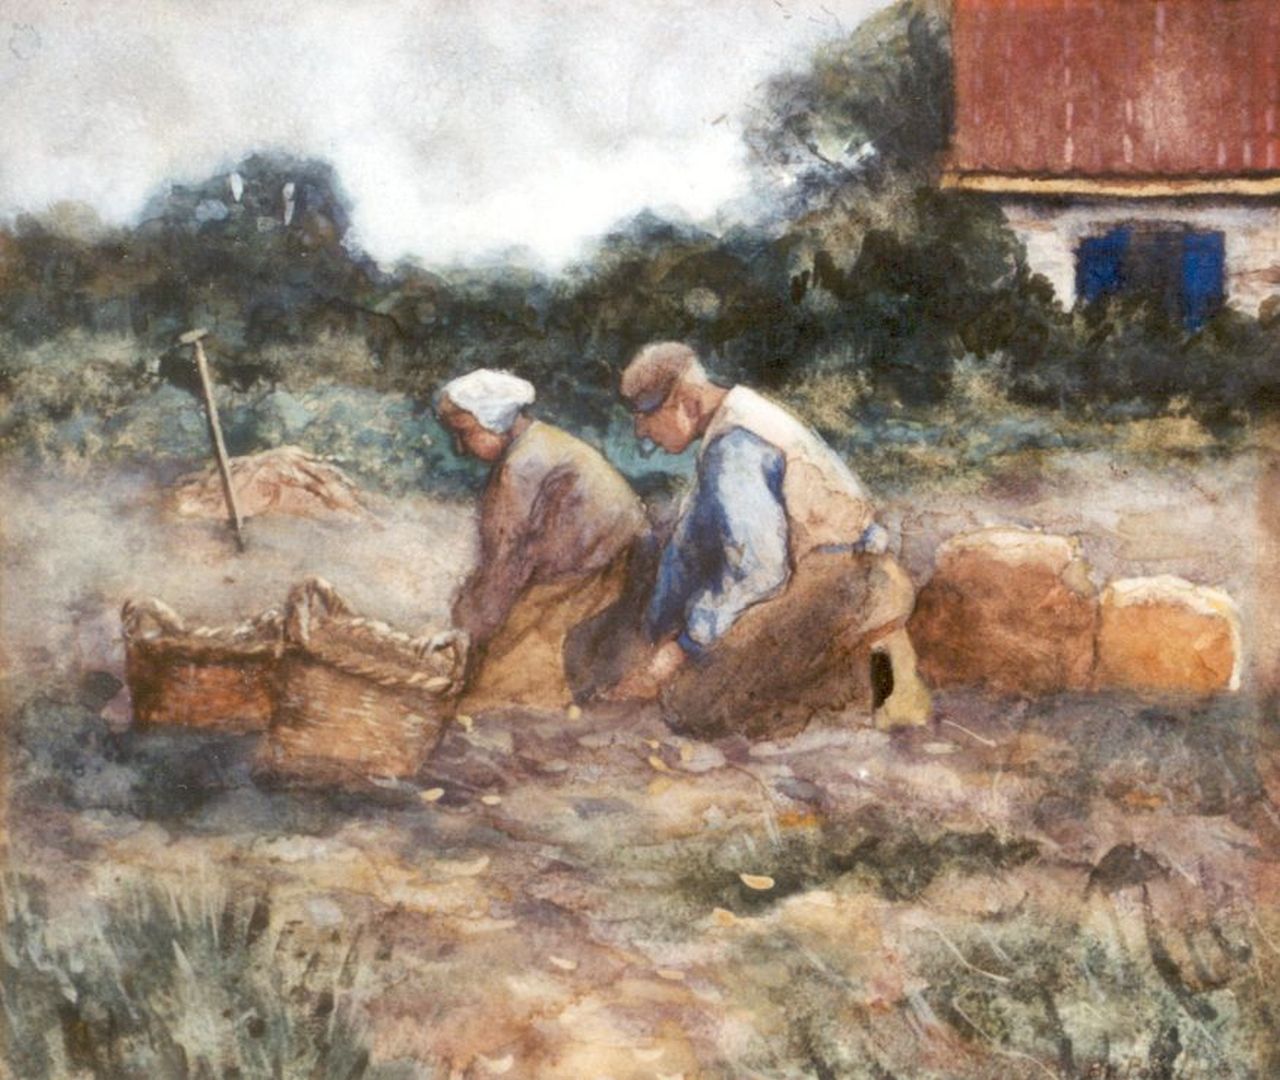 Polvliet B.J.A.  | 'Barend' Jan Abraham Polvliet, Digging up potatoes, Aquarell auf Papier 25,5 x 29,0 cm, signed l.r.